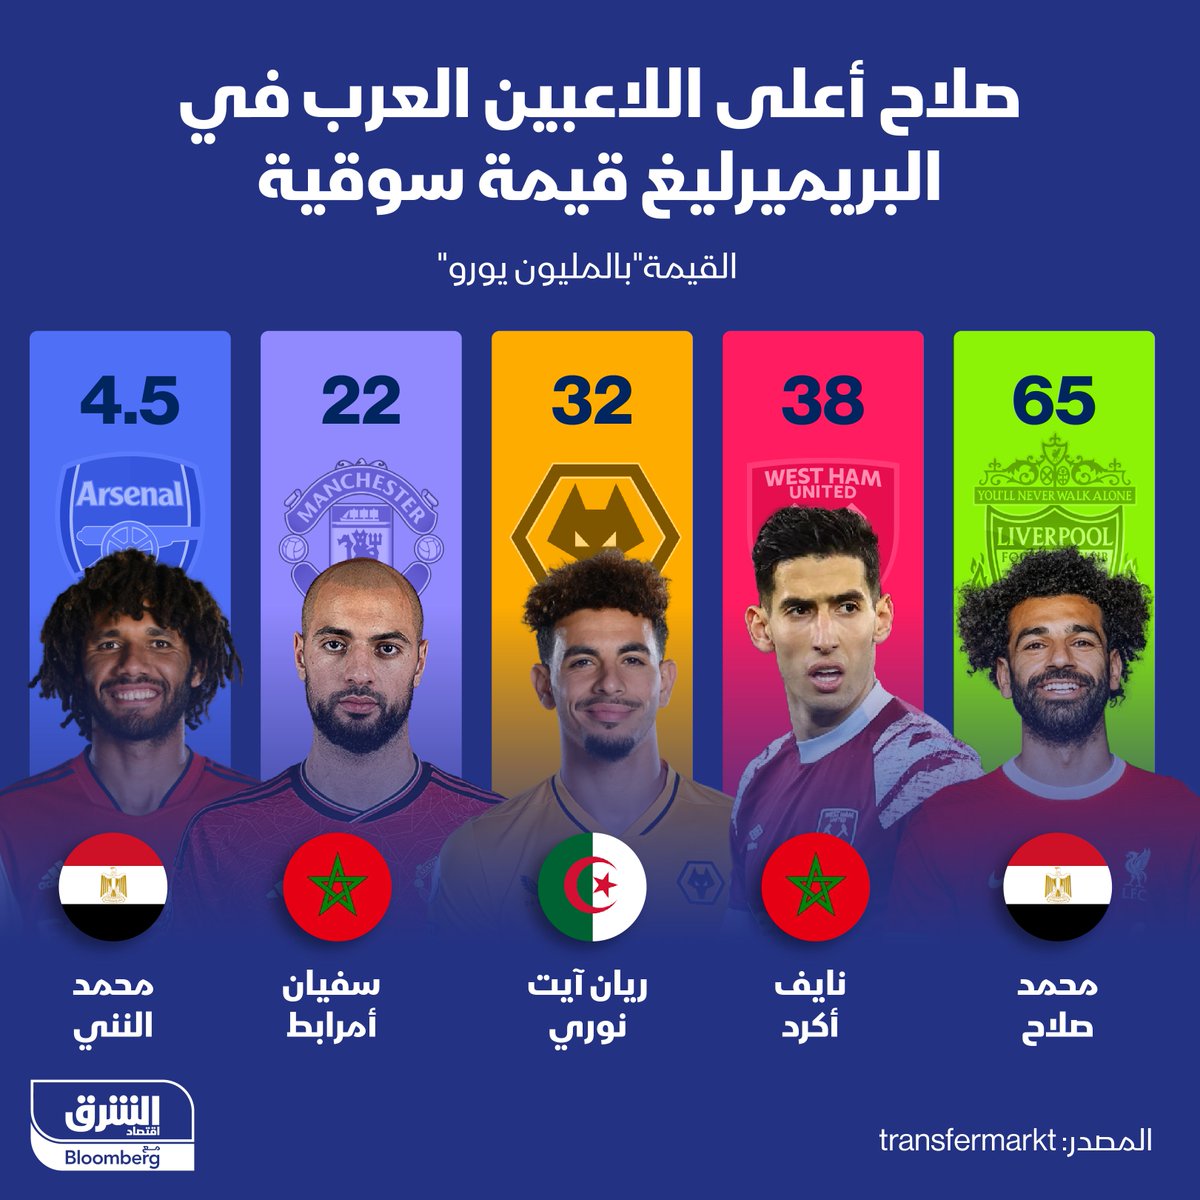 المصري #محمد_صلاح لاعب '#ليفربول' هو أعلى اللاعبين العرب في بطولة الدوري الإنجليزي قيمة سوقية بنحو 65 مليون يورو

#الشرق_رياضة
#اقتصاد_الشرق